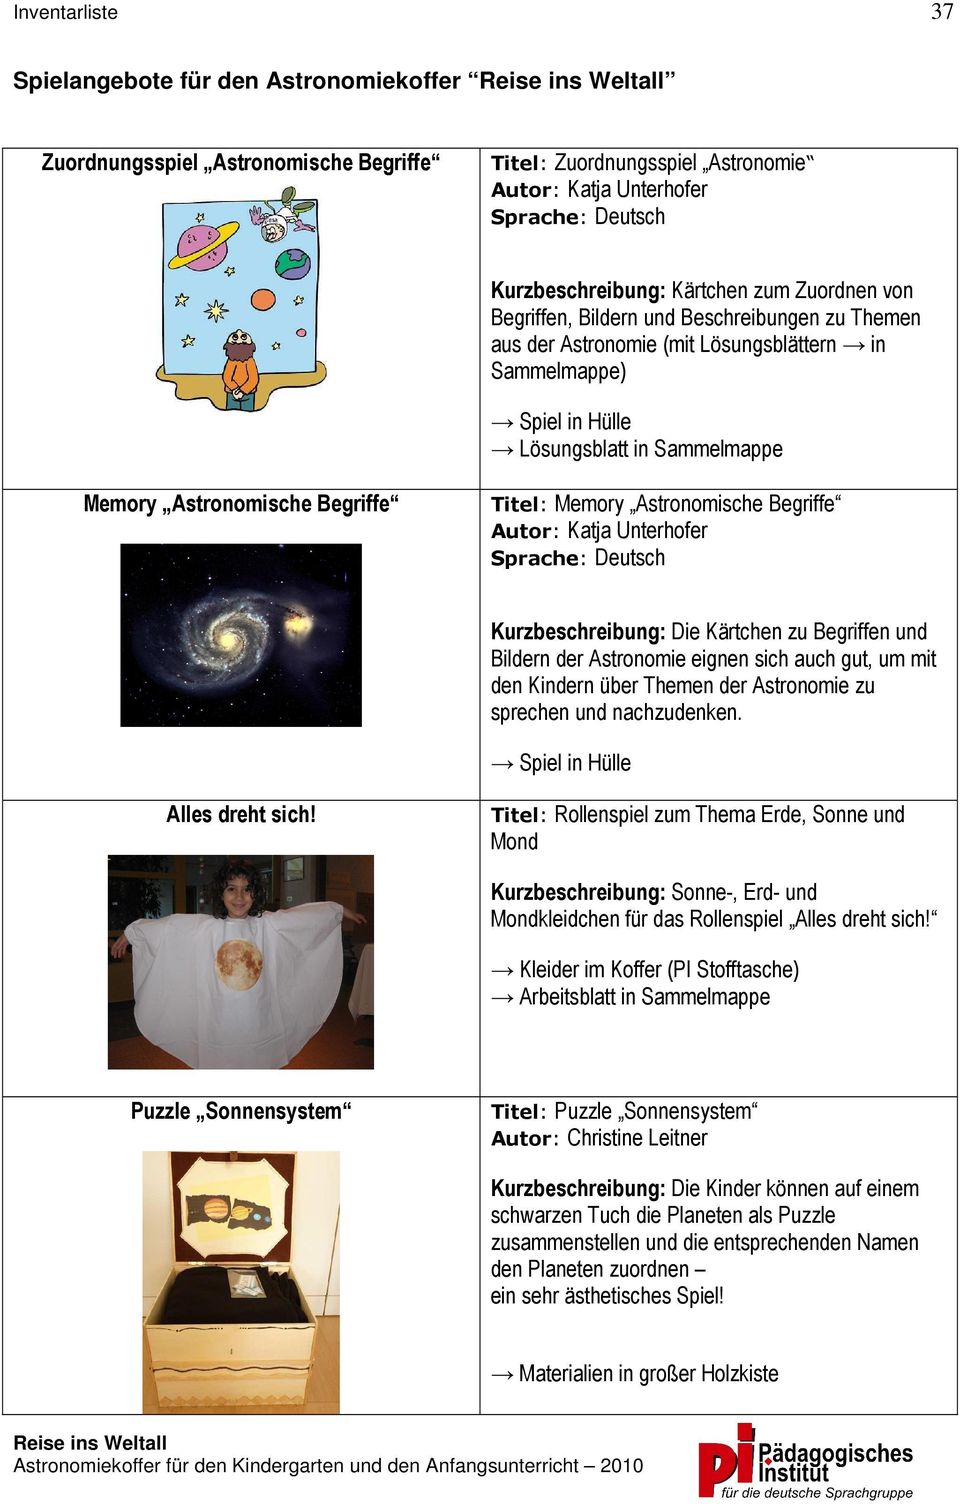 Autor: Katja Unterhofer Die Kärtchen zu Begriffen und Bildern der Astronomie eignen sich auch gut, um mit den Kindern über Themen der Astronomie zu sprechen und nachzudenken.